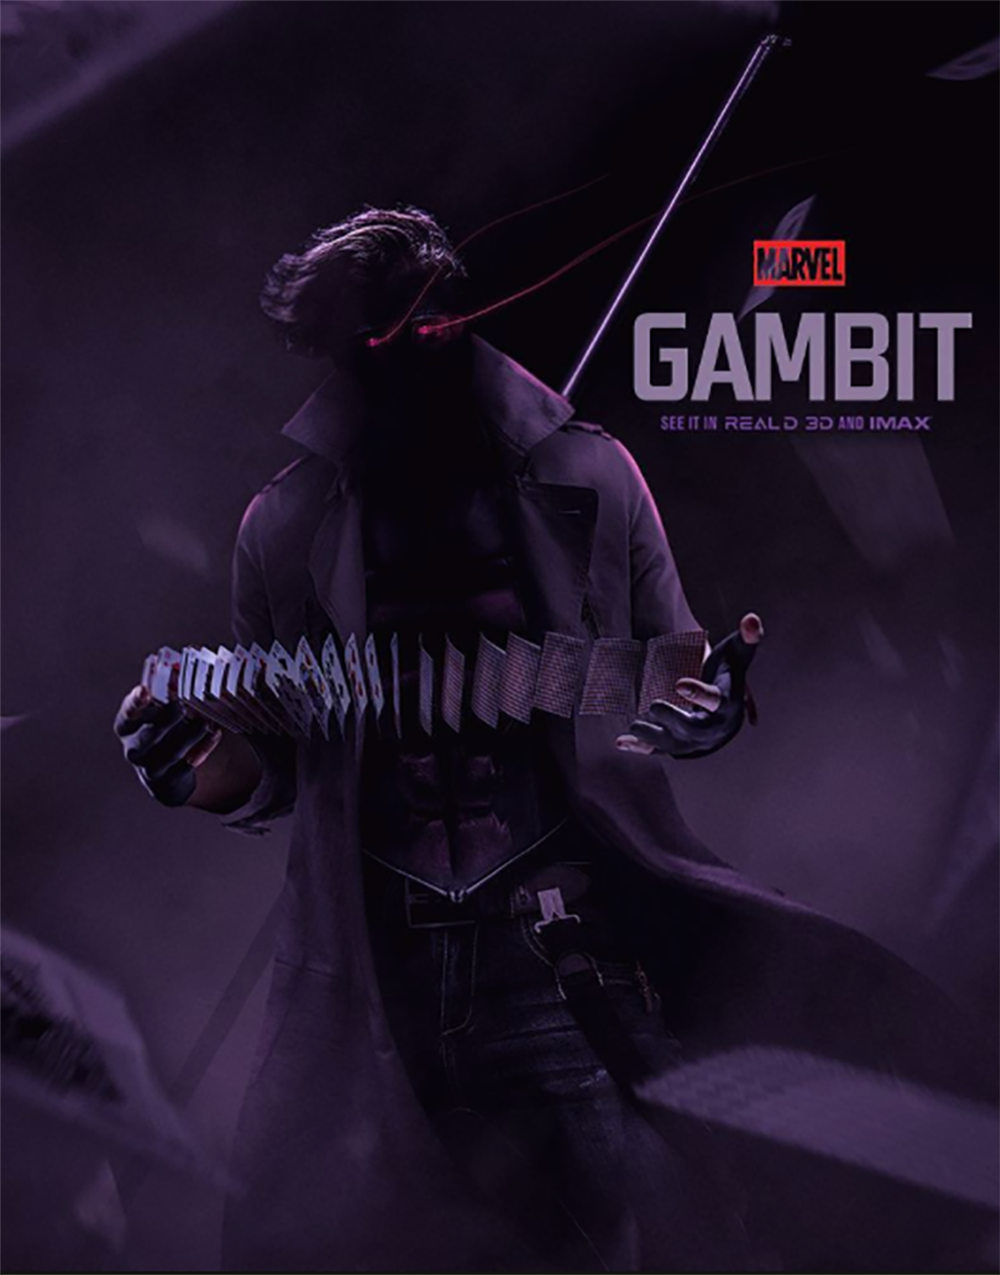 Gambit movie fan poster